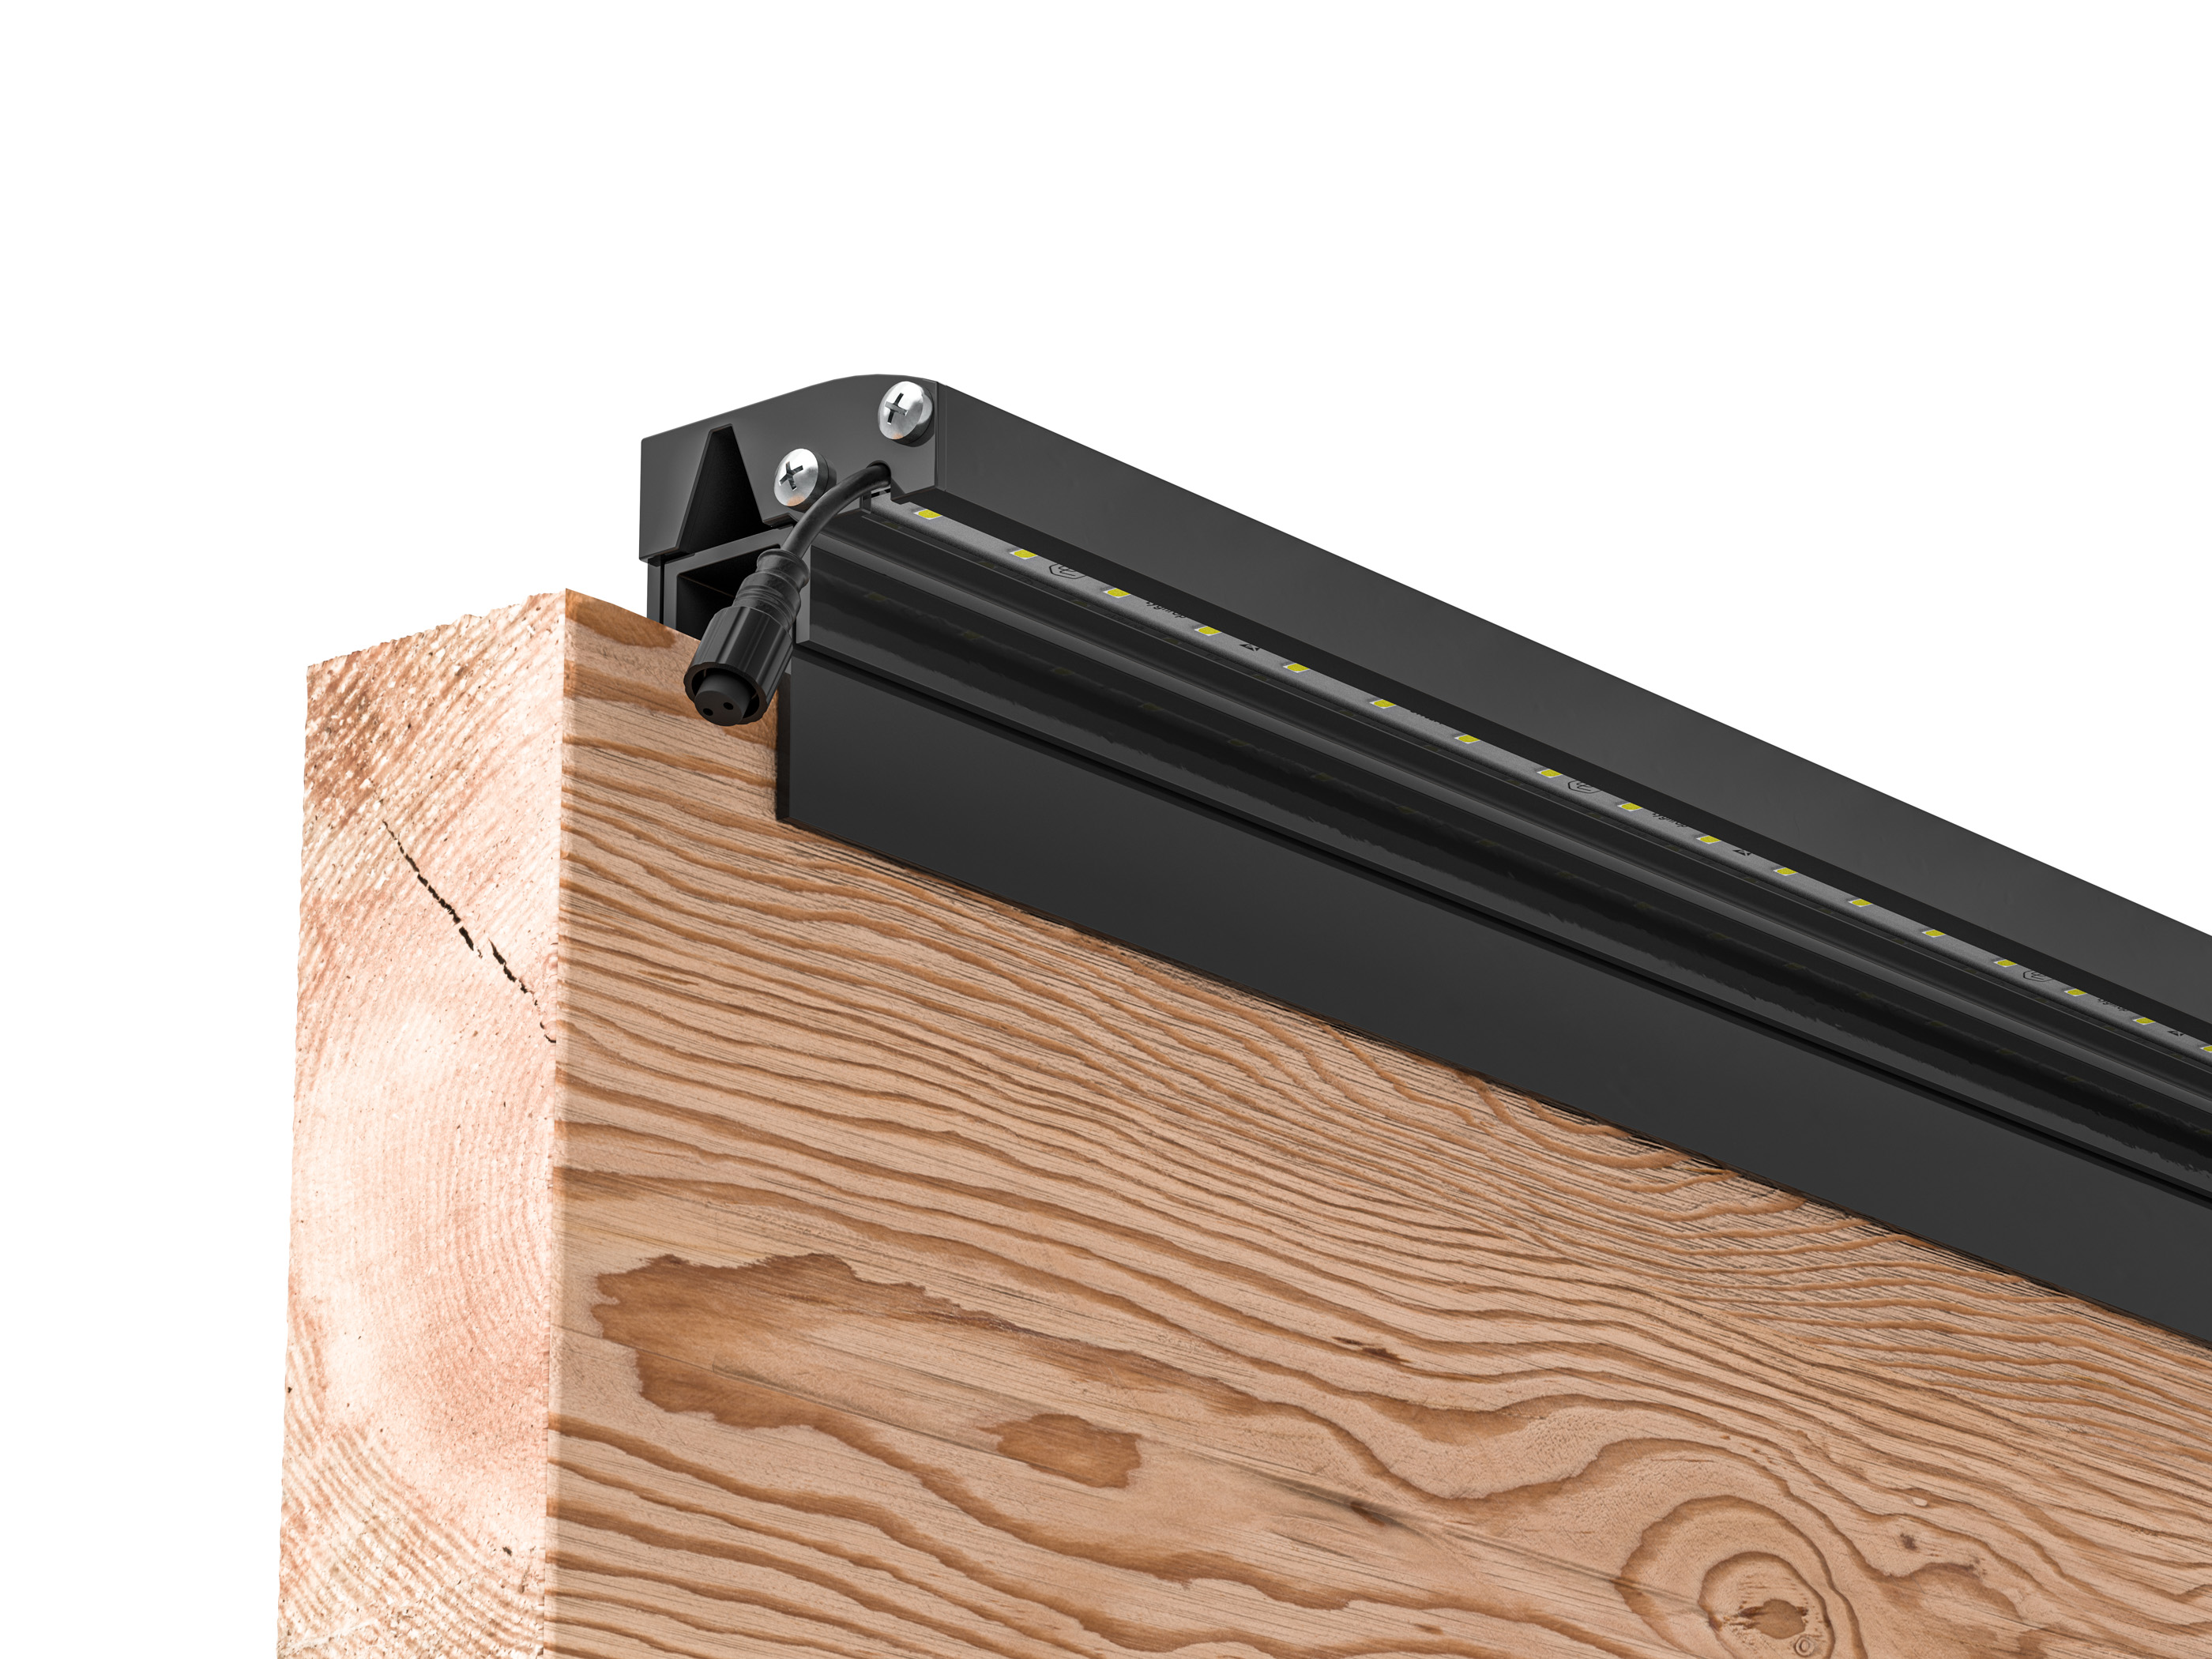 LED Prestige Leuchtleisten Starter-Set 5x 173,3 cm — anthrazit für Holzzaun